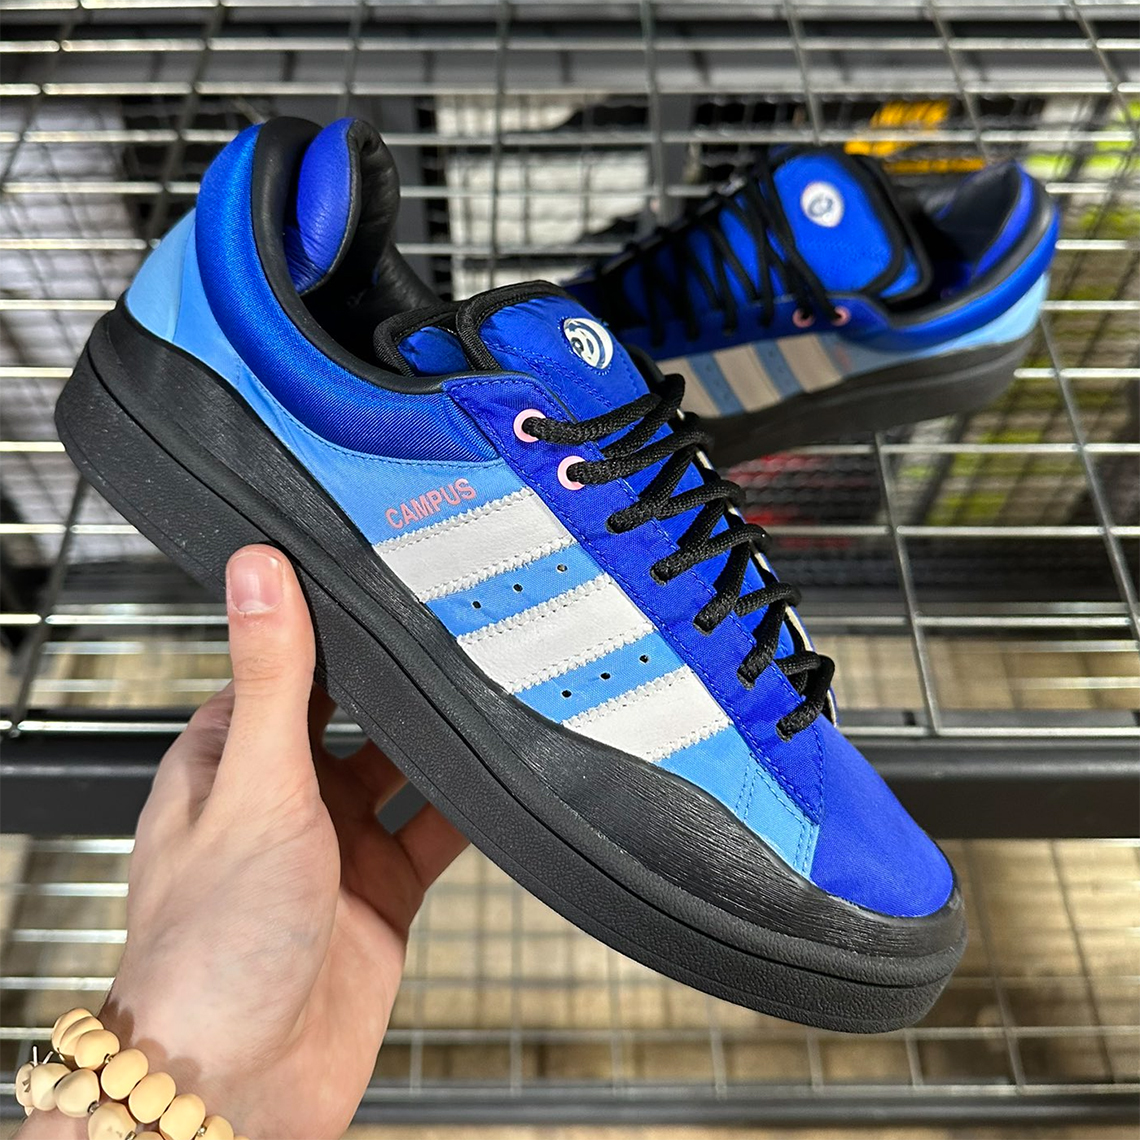 Duque Barbero violación Bad Bunny x adidas Campus Light "Blue/Black" Release | Sneaker News